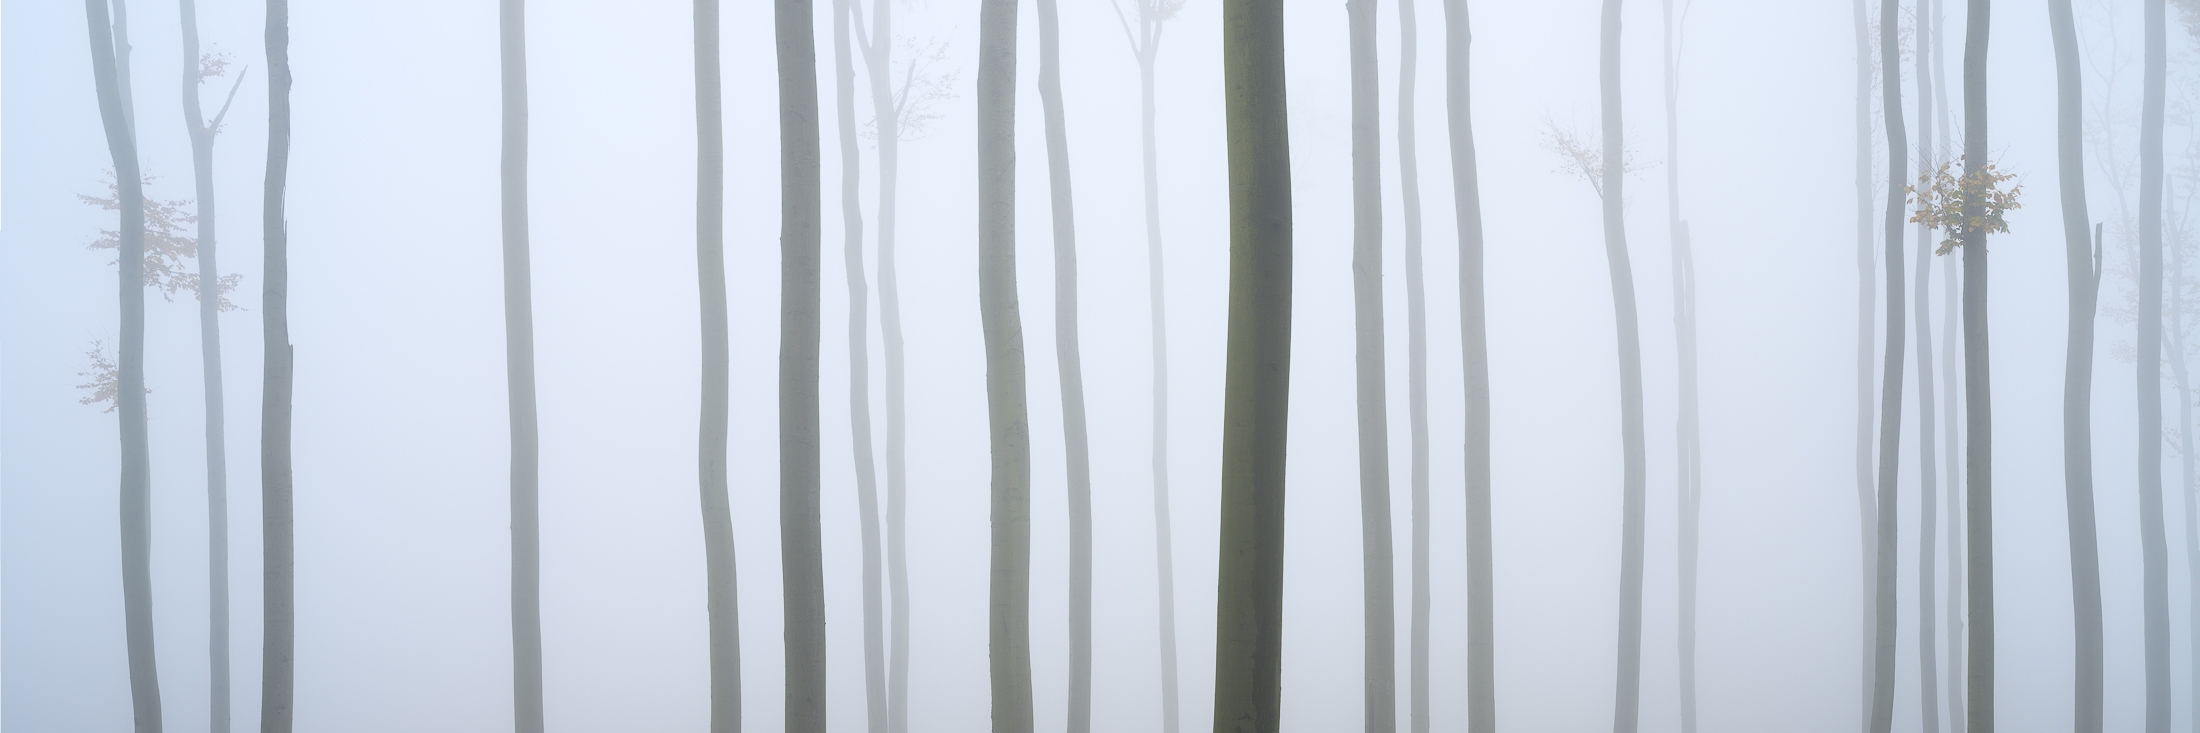 Bukový les v mlze - panorama, říjen 2022